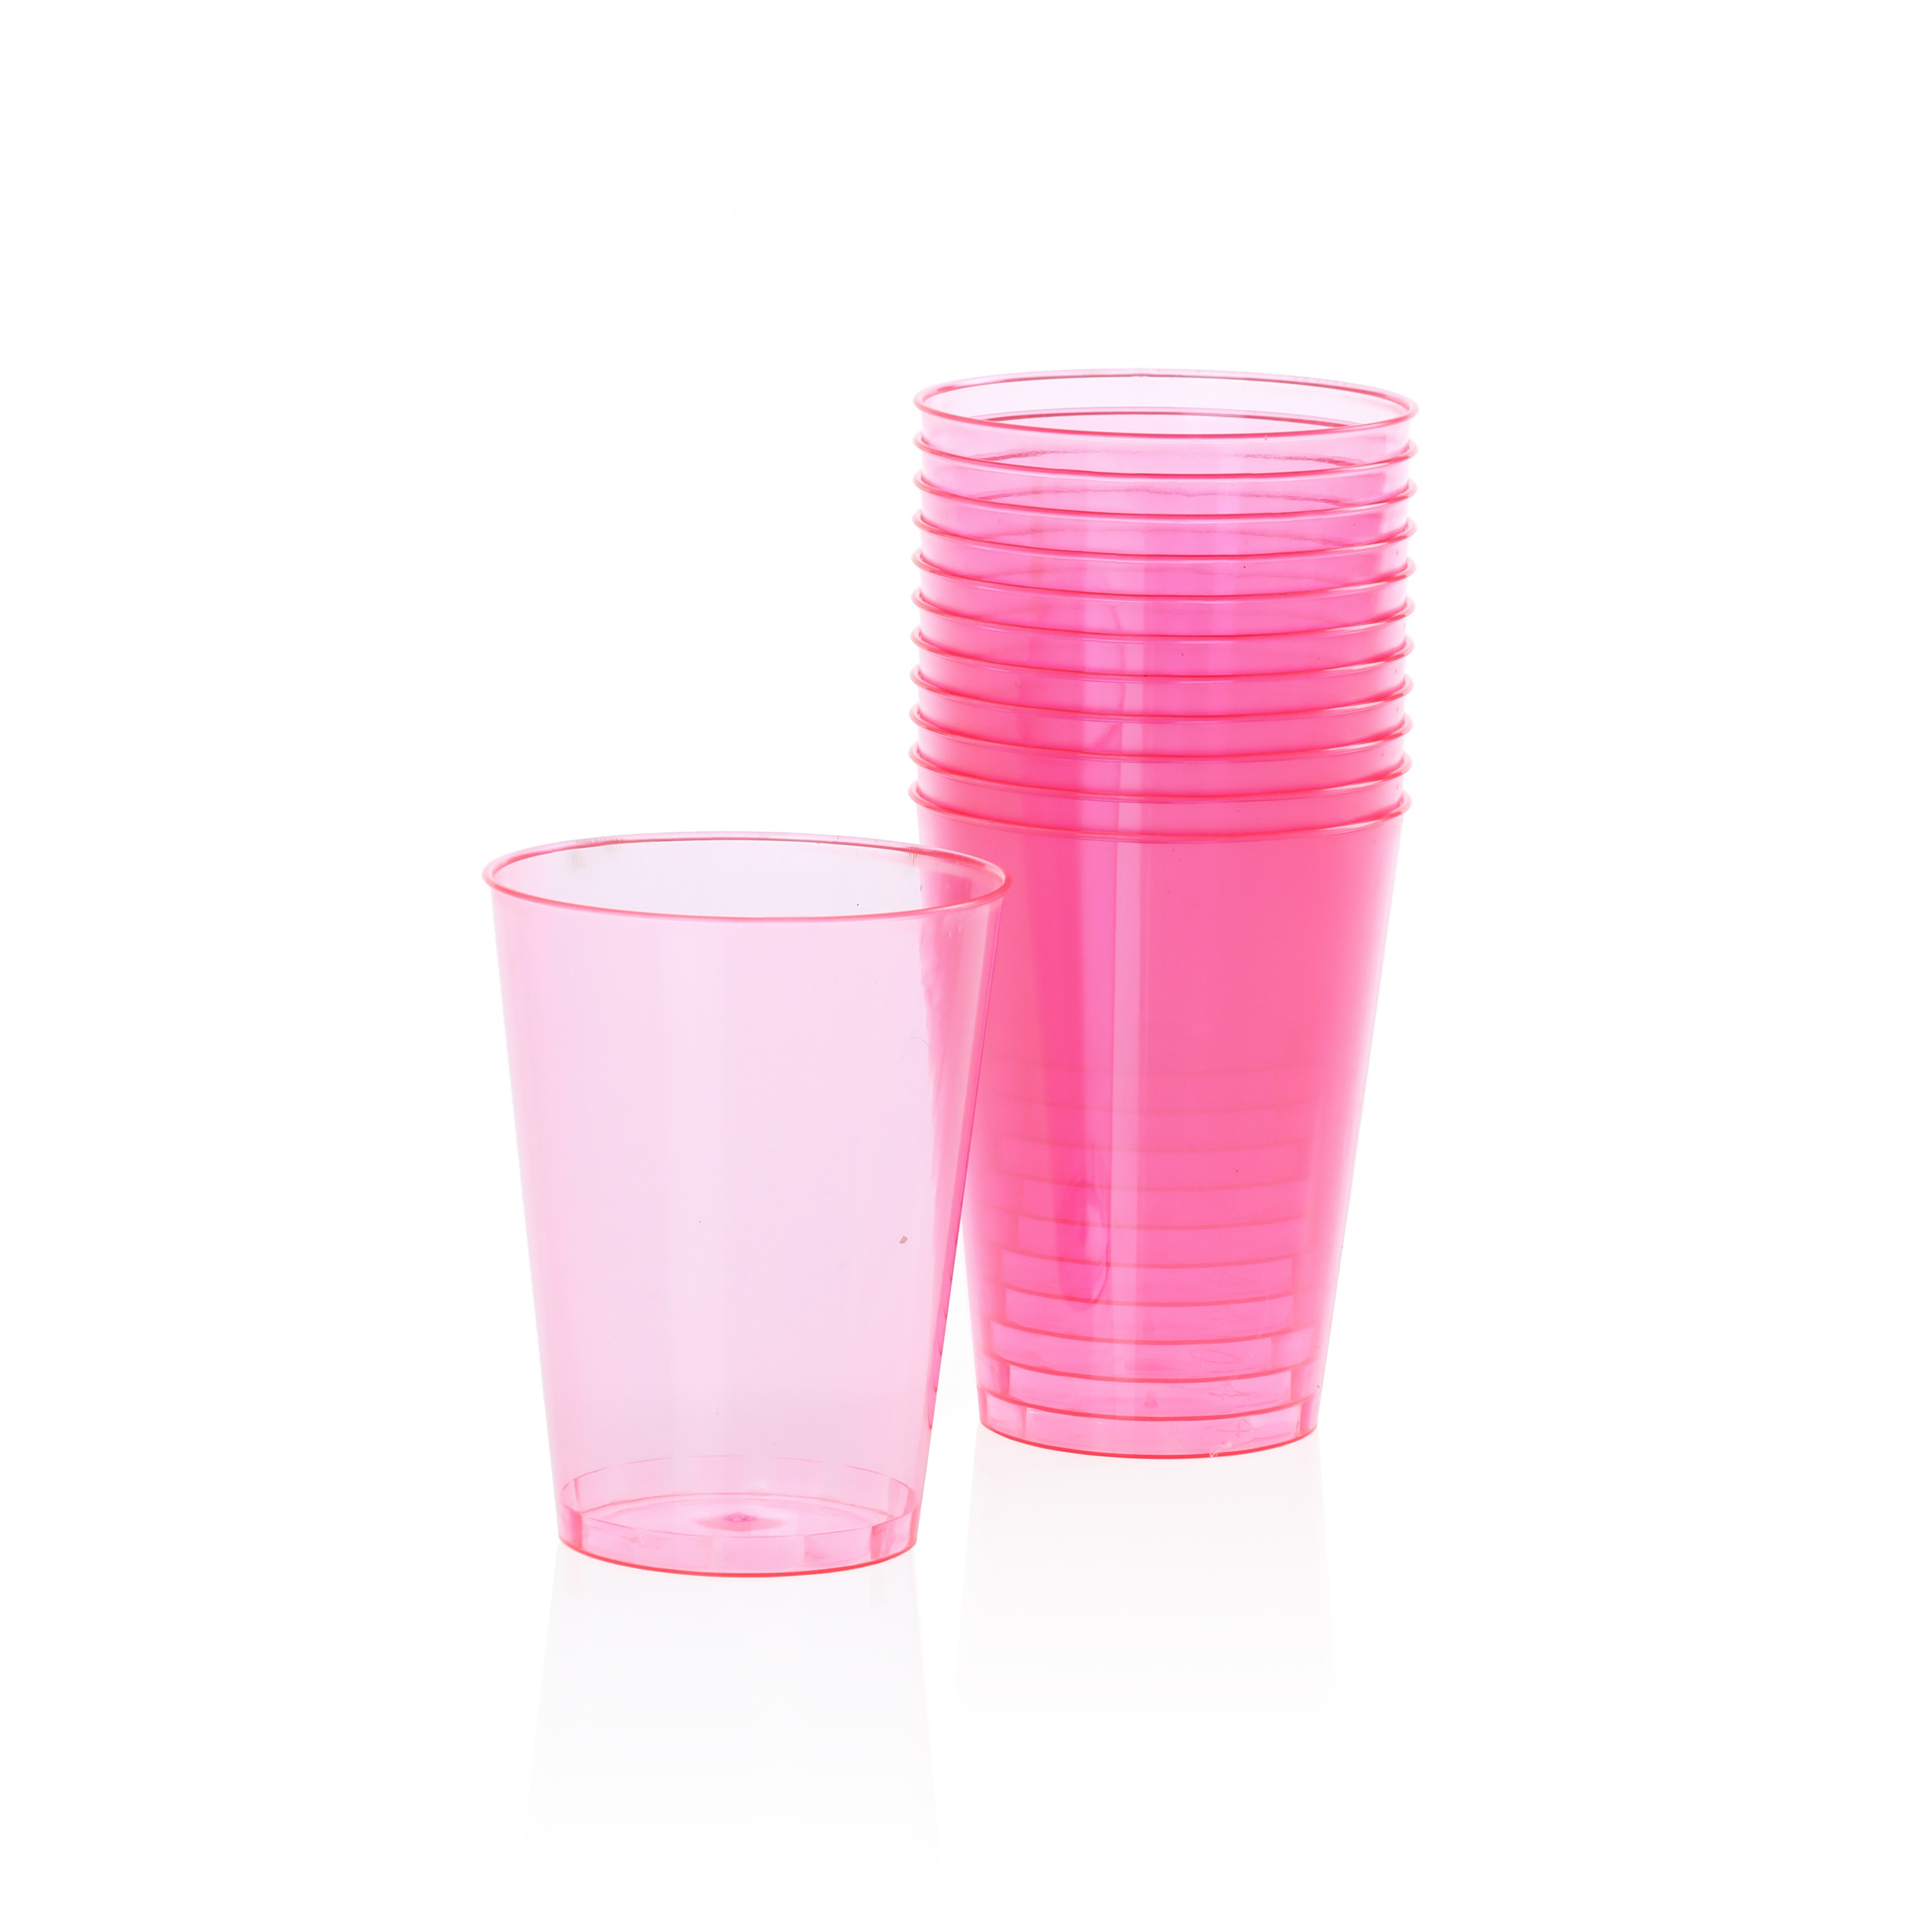 כוסות פלסטיק קשיח- ורוד